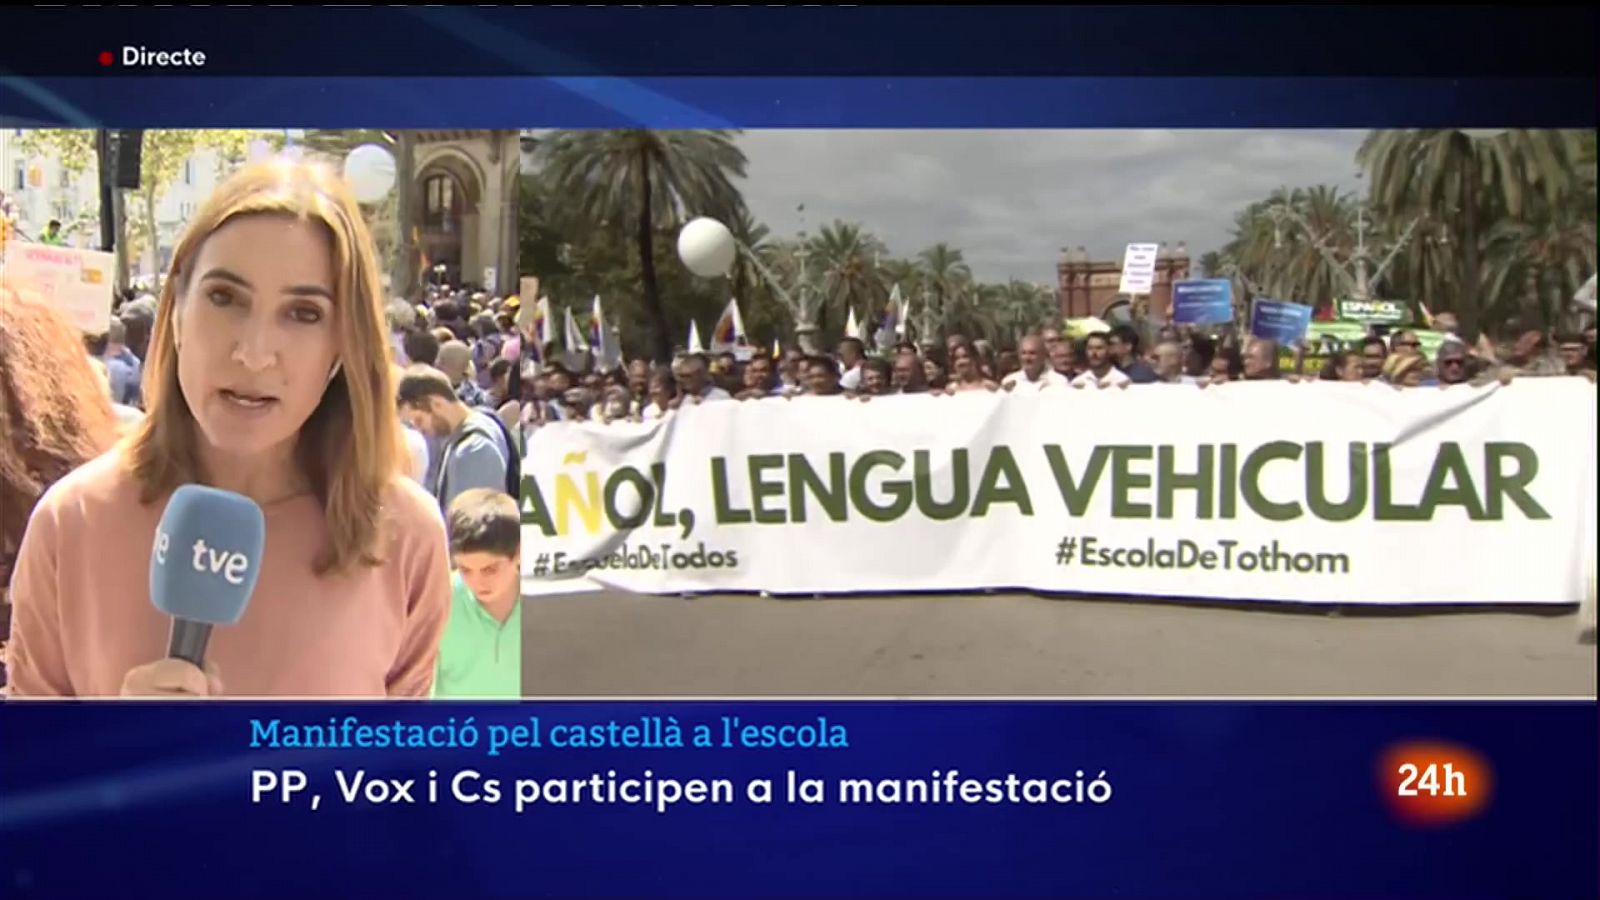 Unes 2.800 persones es manifesten perquè el castellà sigui vehicular